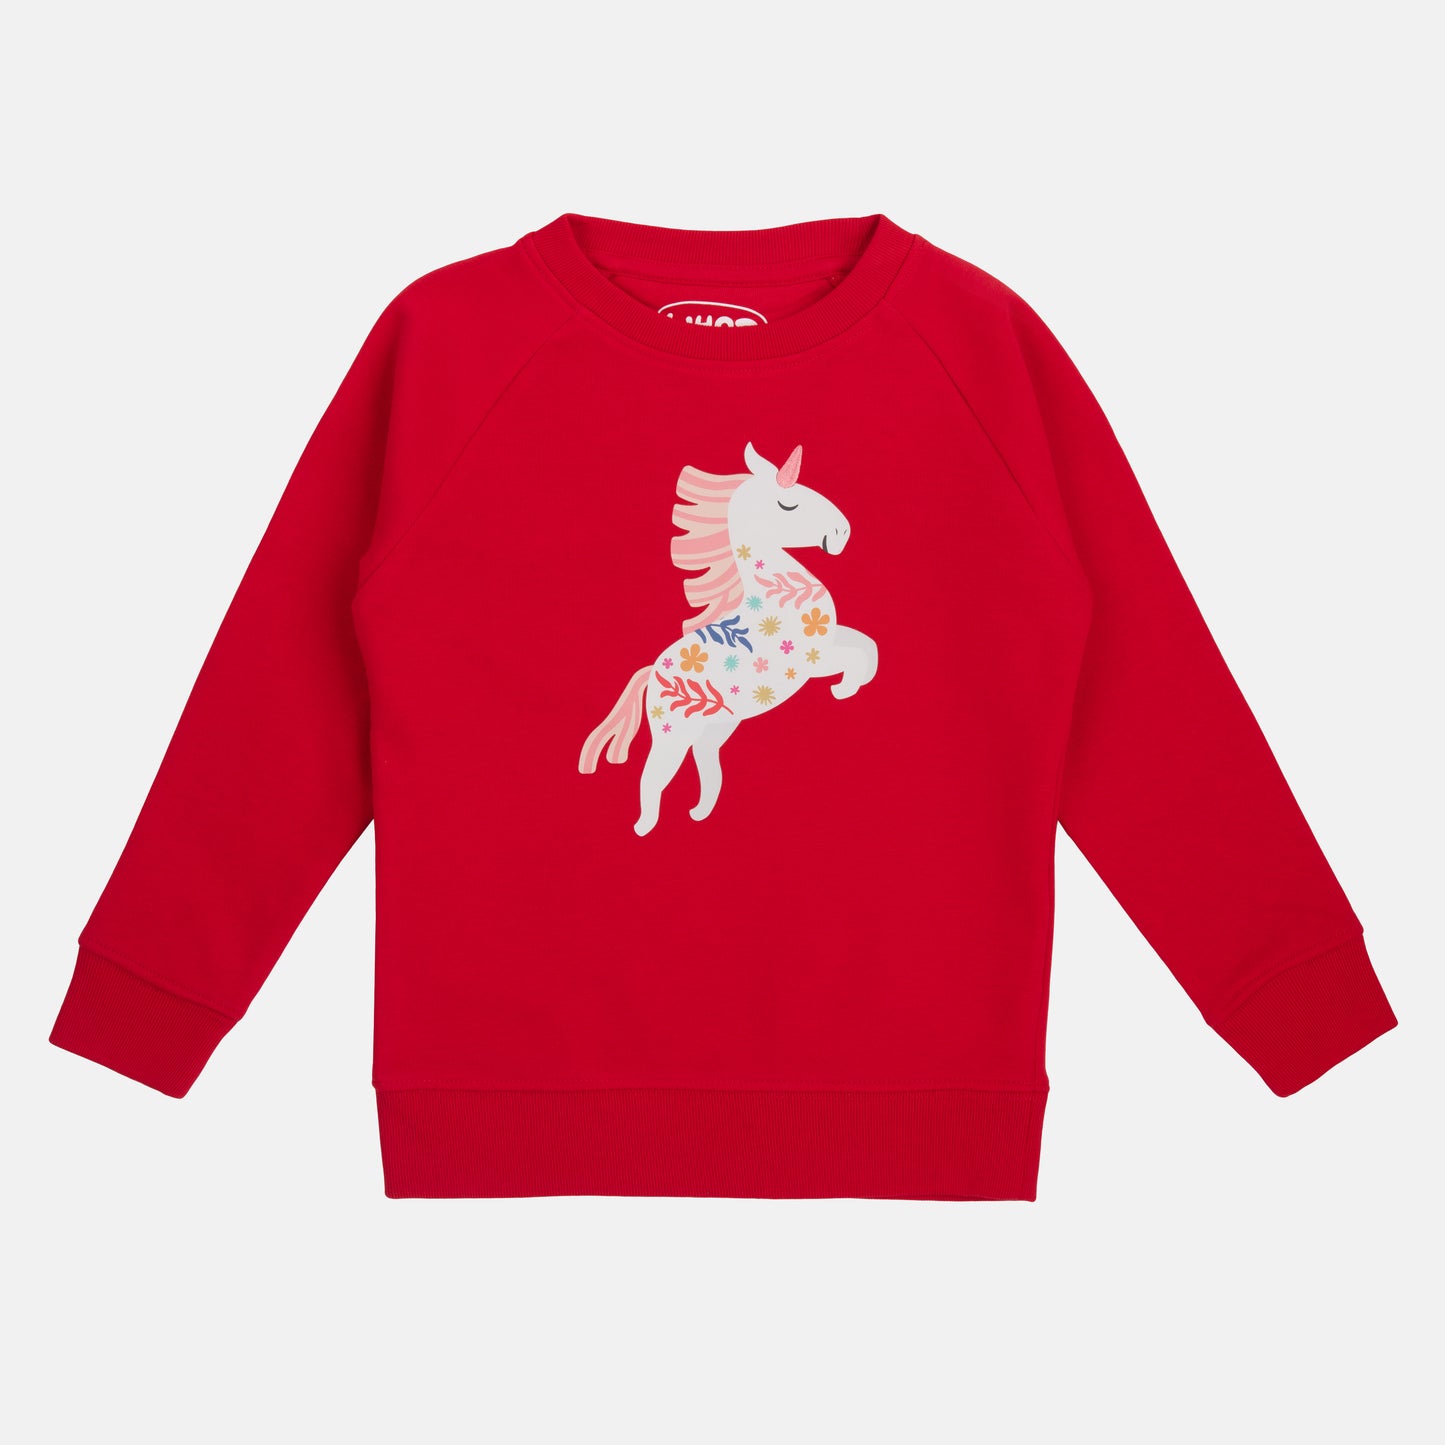 Who said nachhaltiger Sweater in Rot mit Einhorn